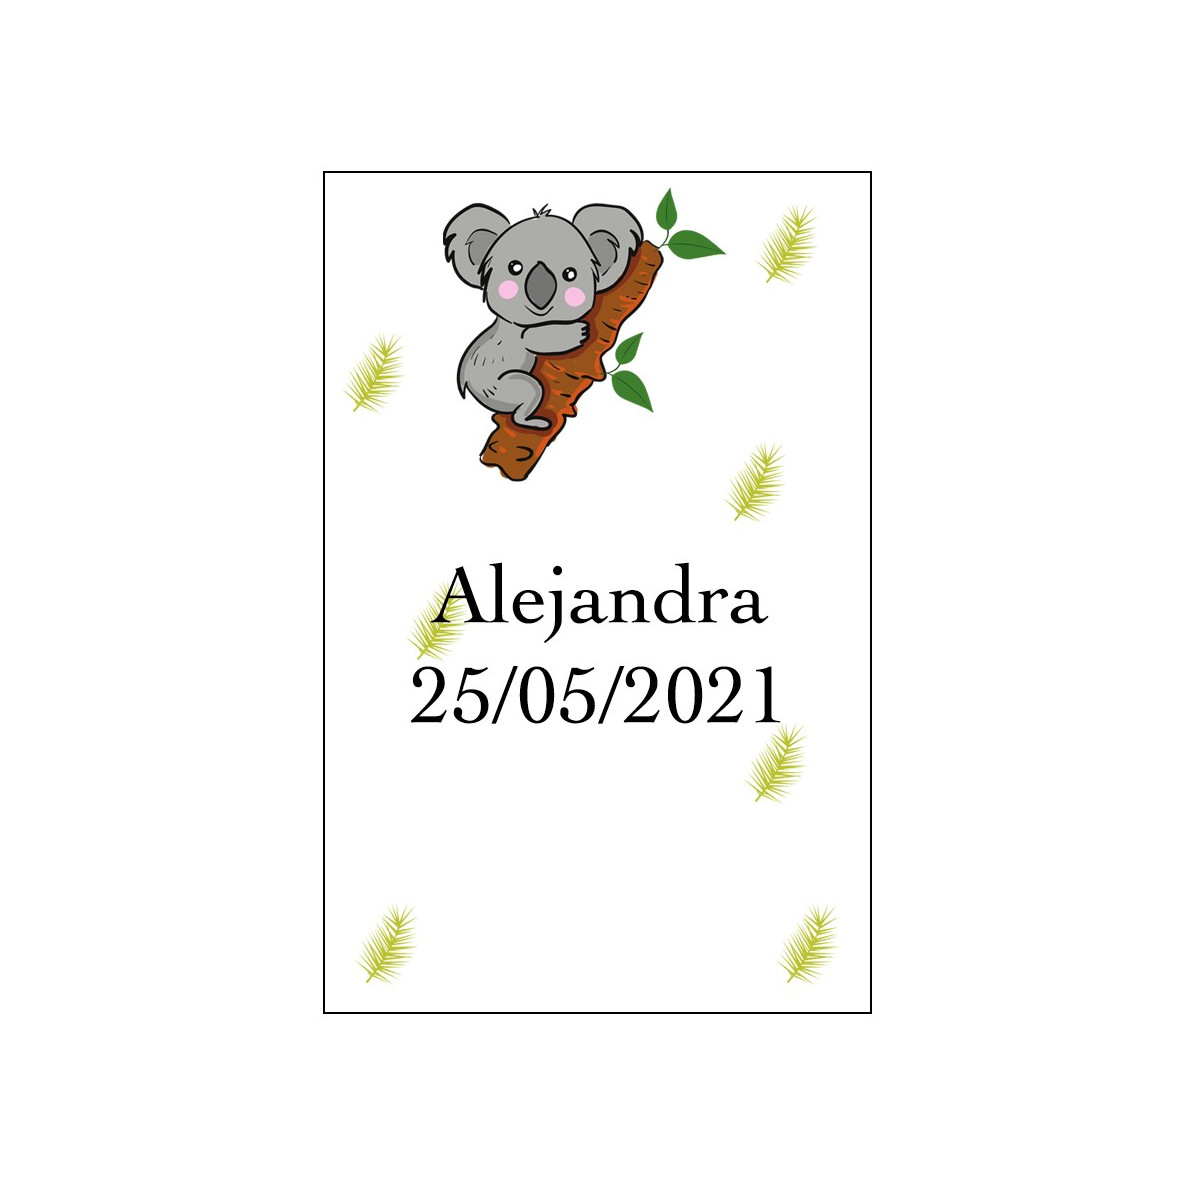 Adhesivo koala personalizado con nombre y fecha